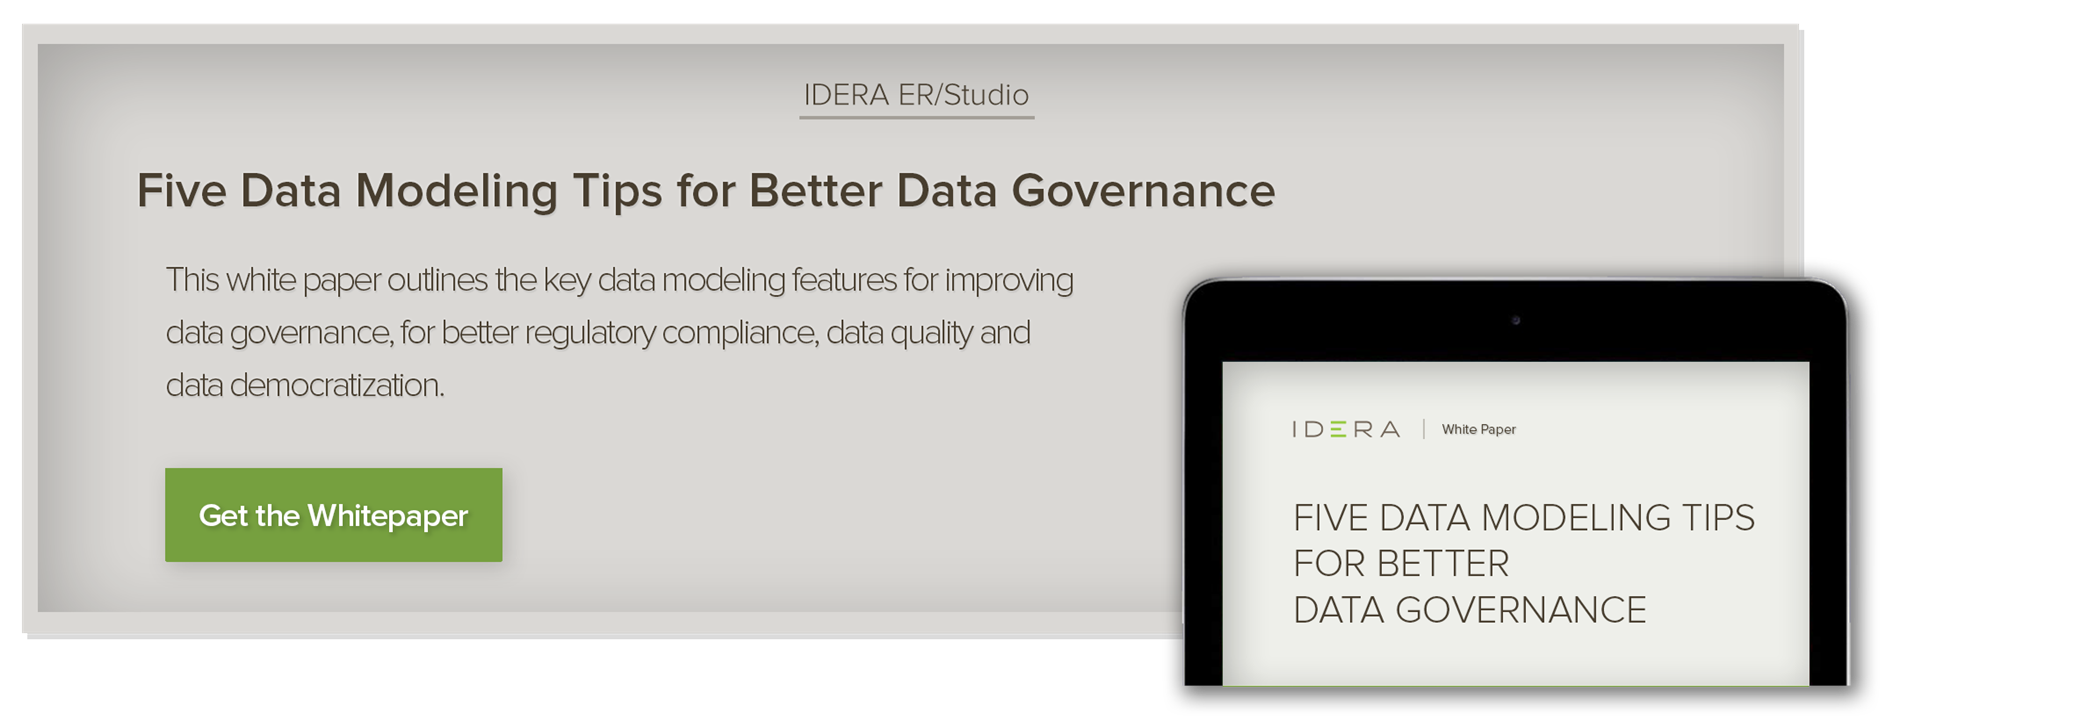 Five Data Modeling Tips for Data Governance